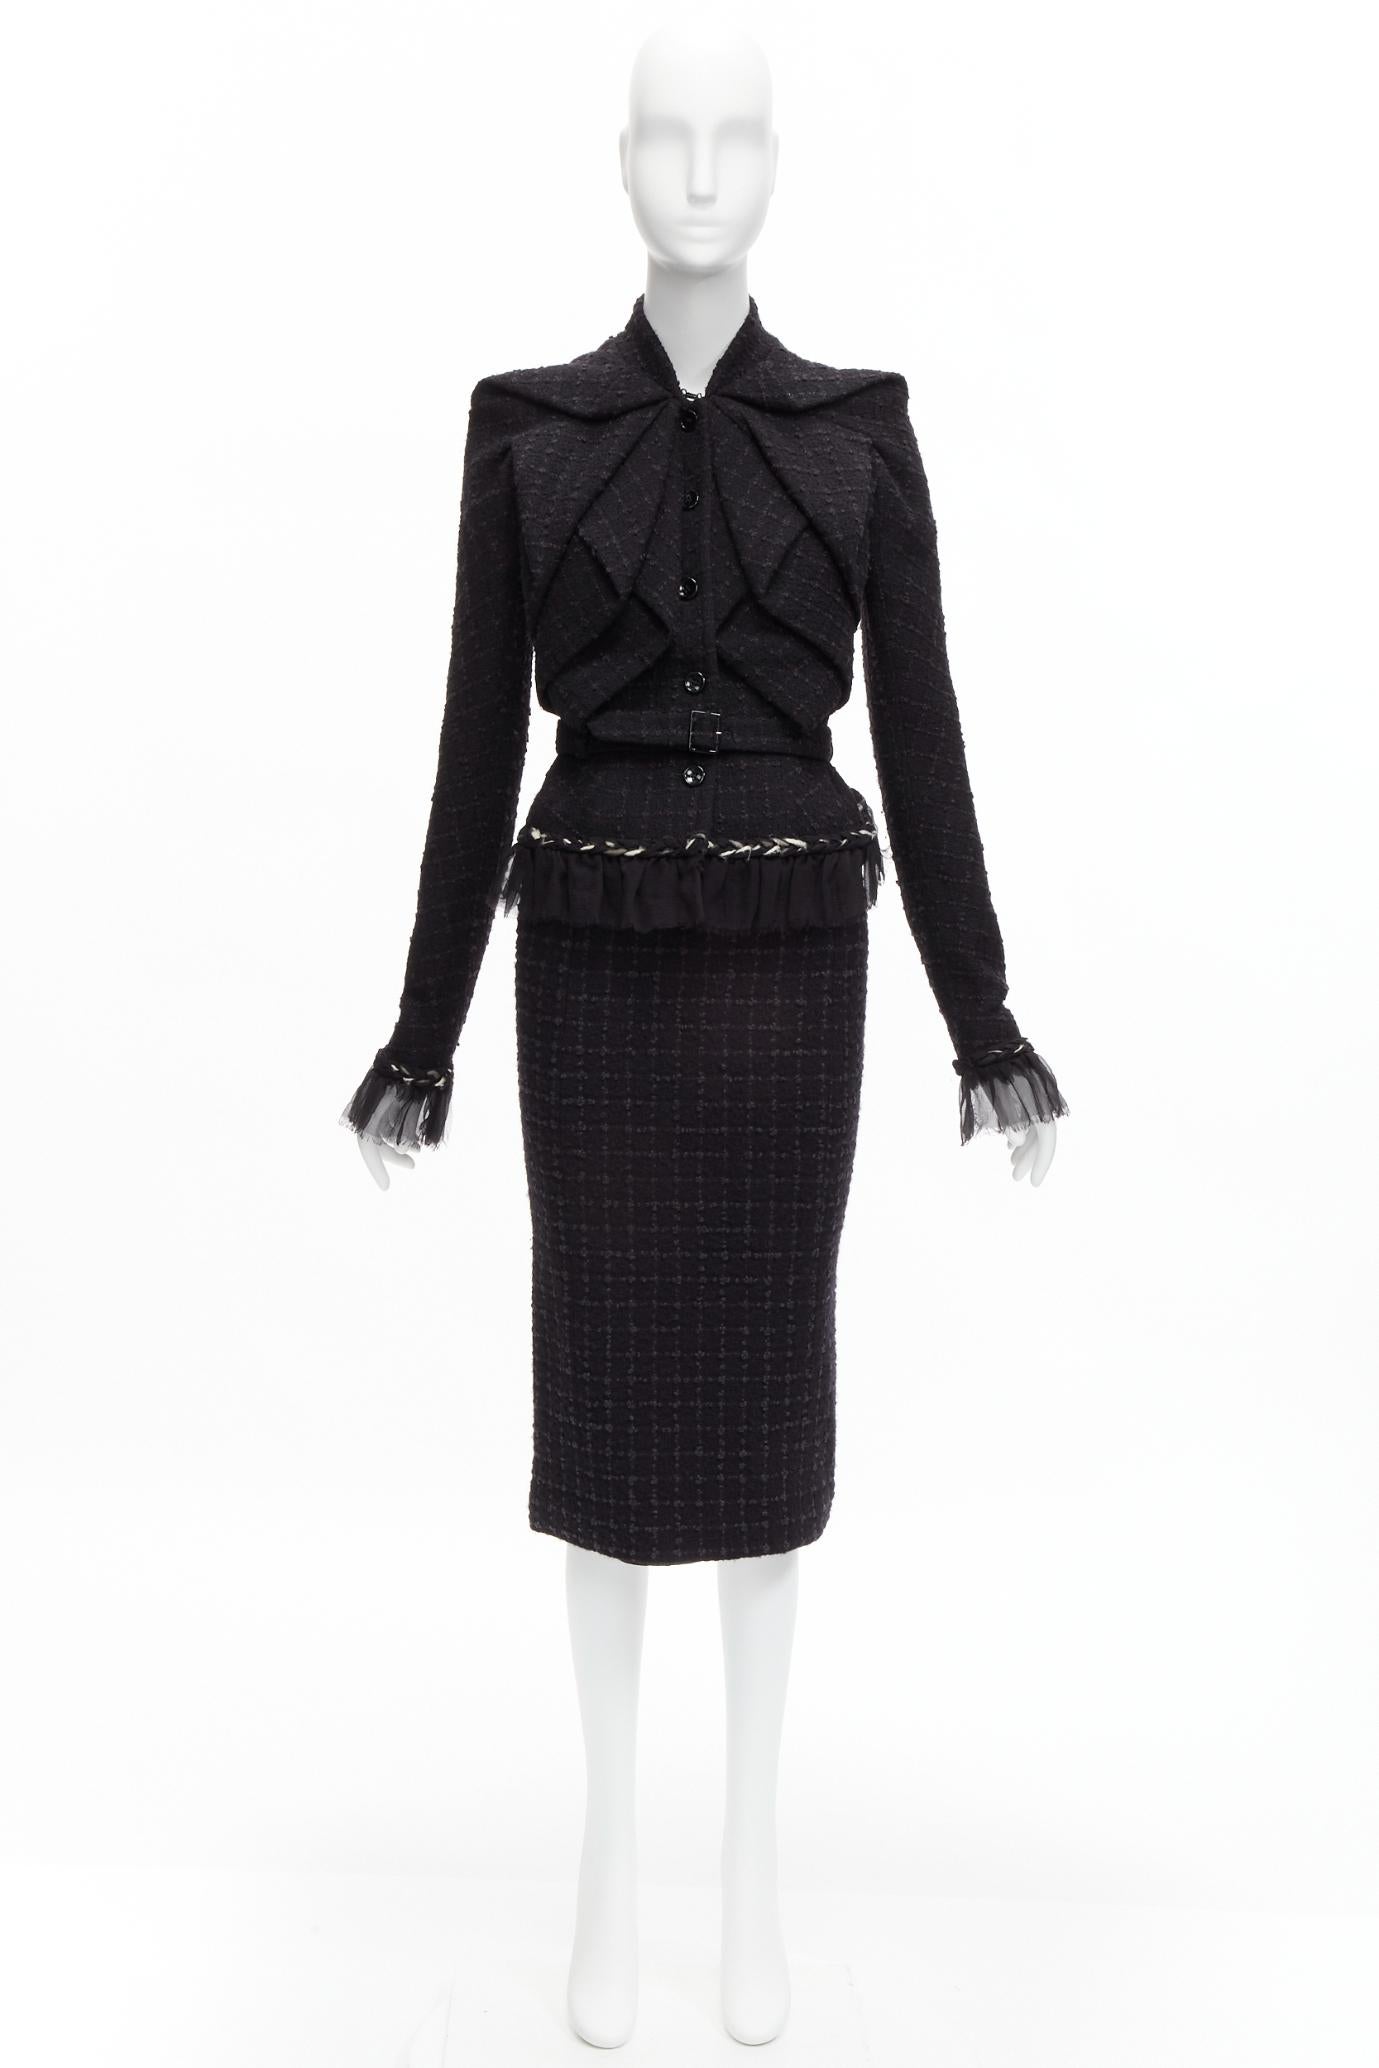 JOHN GALLIANO Vintage  wool tweed braid trim ruffle jacket skirt suit FR40 L 11